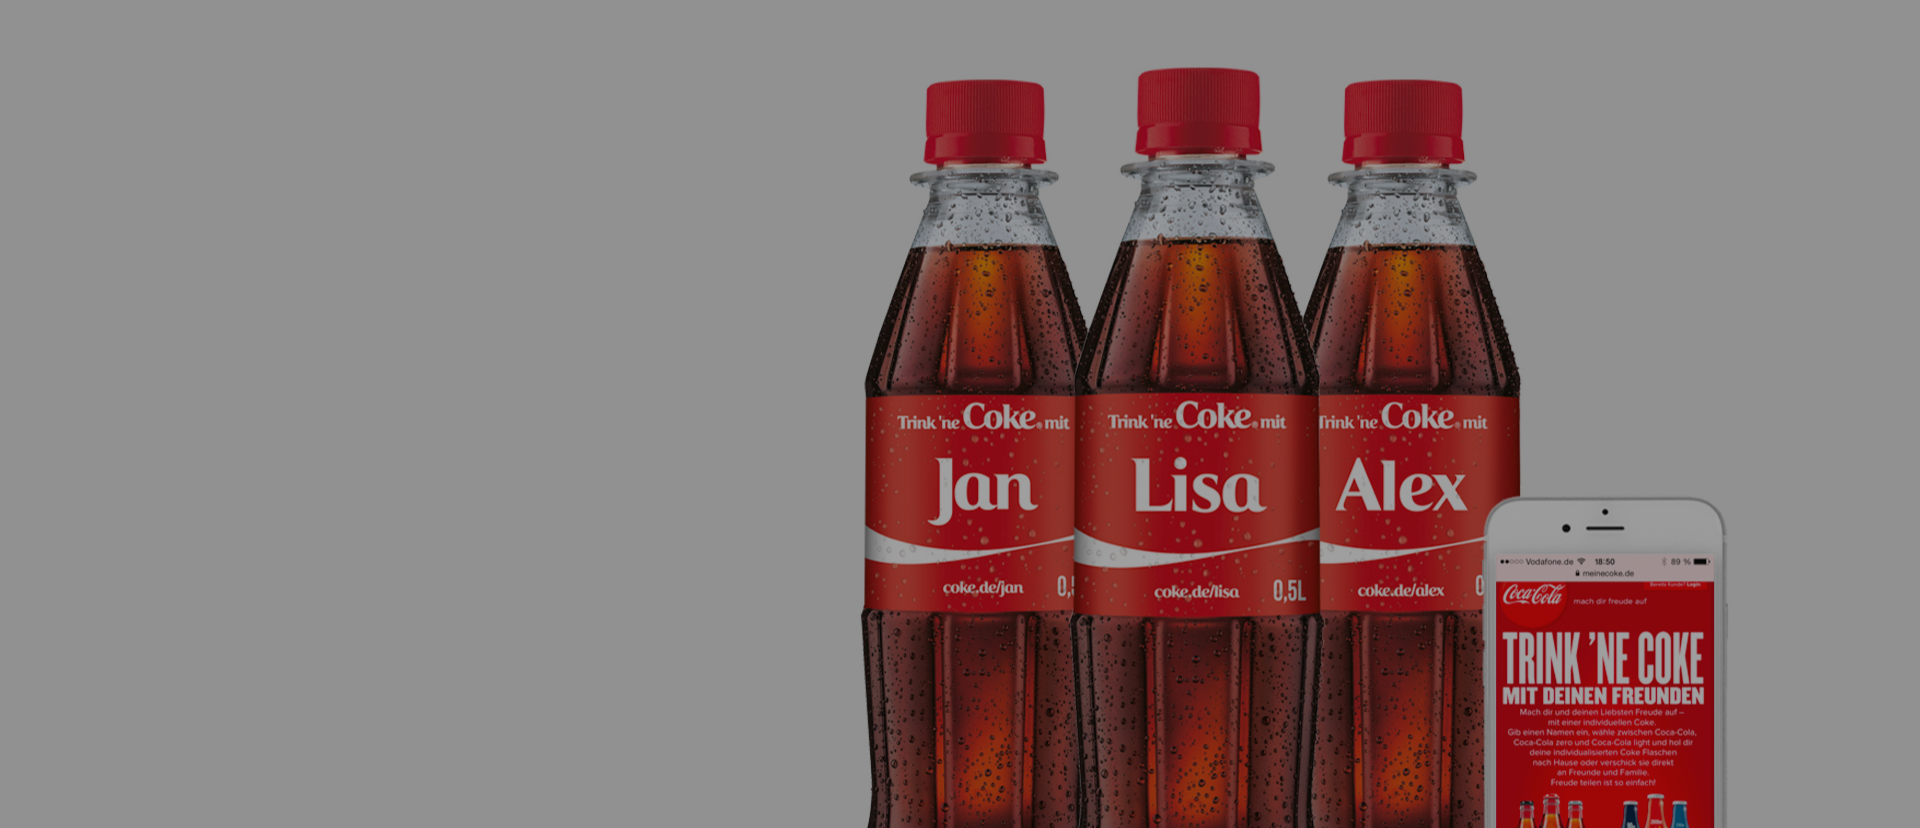 Coca-Cola – Share a Coke